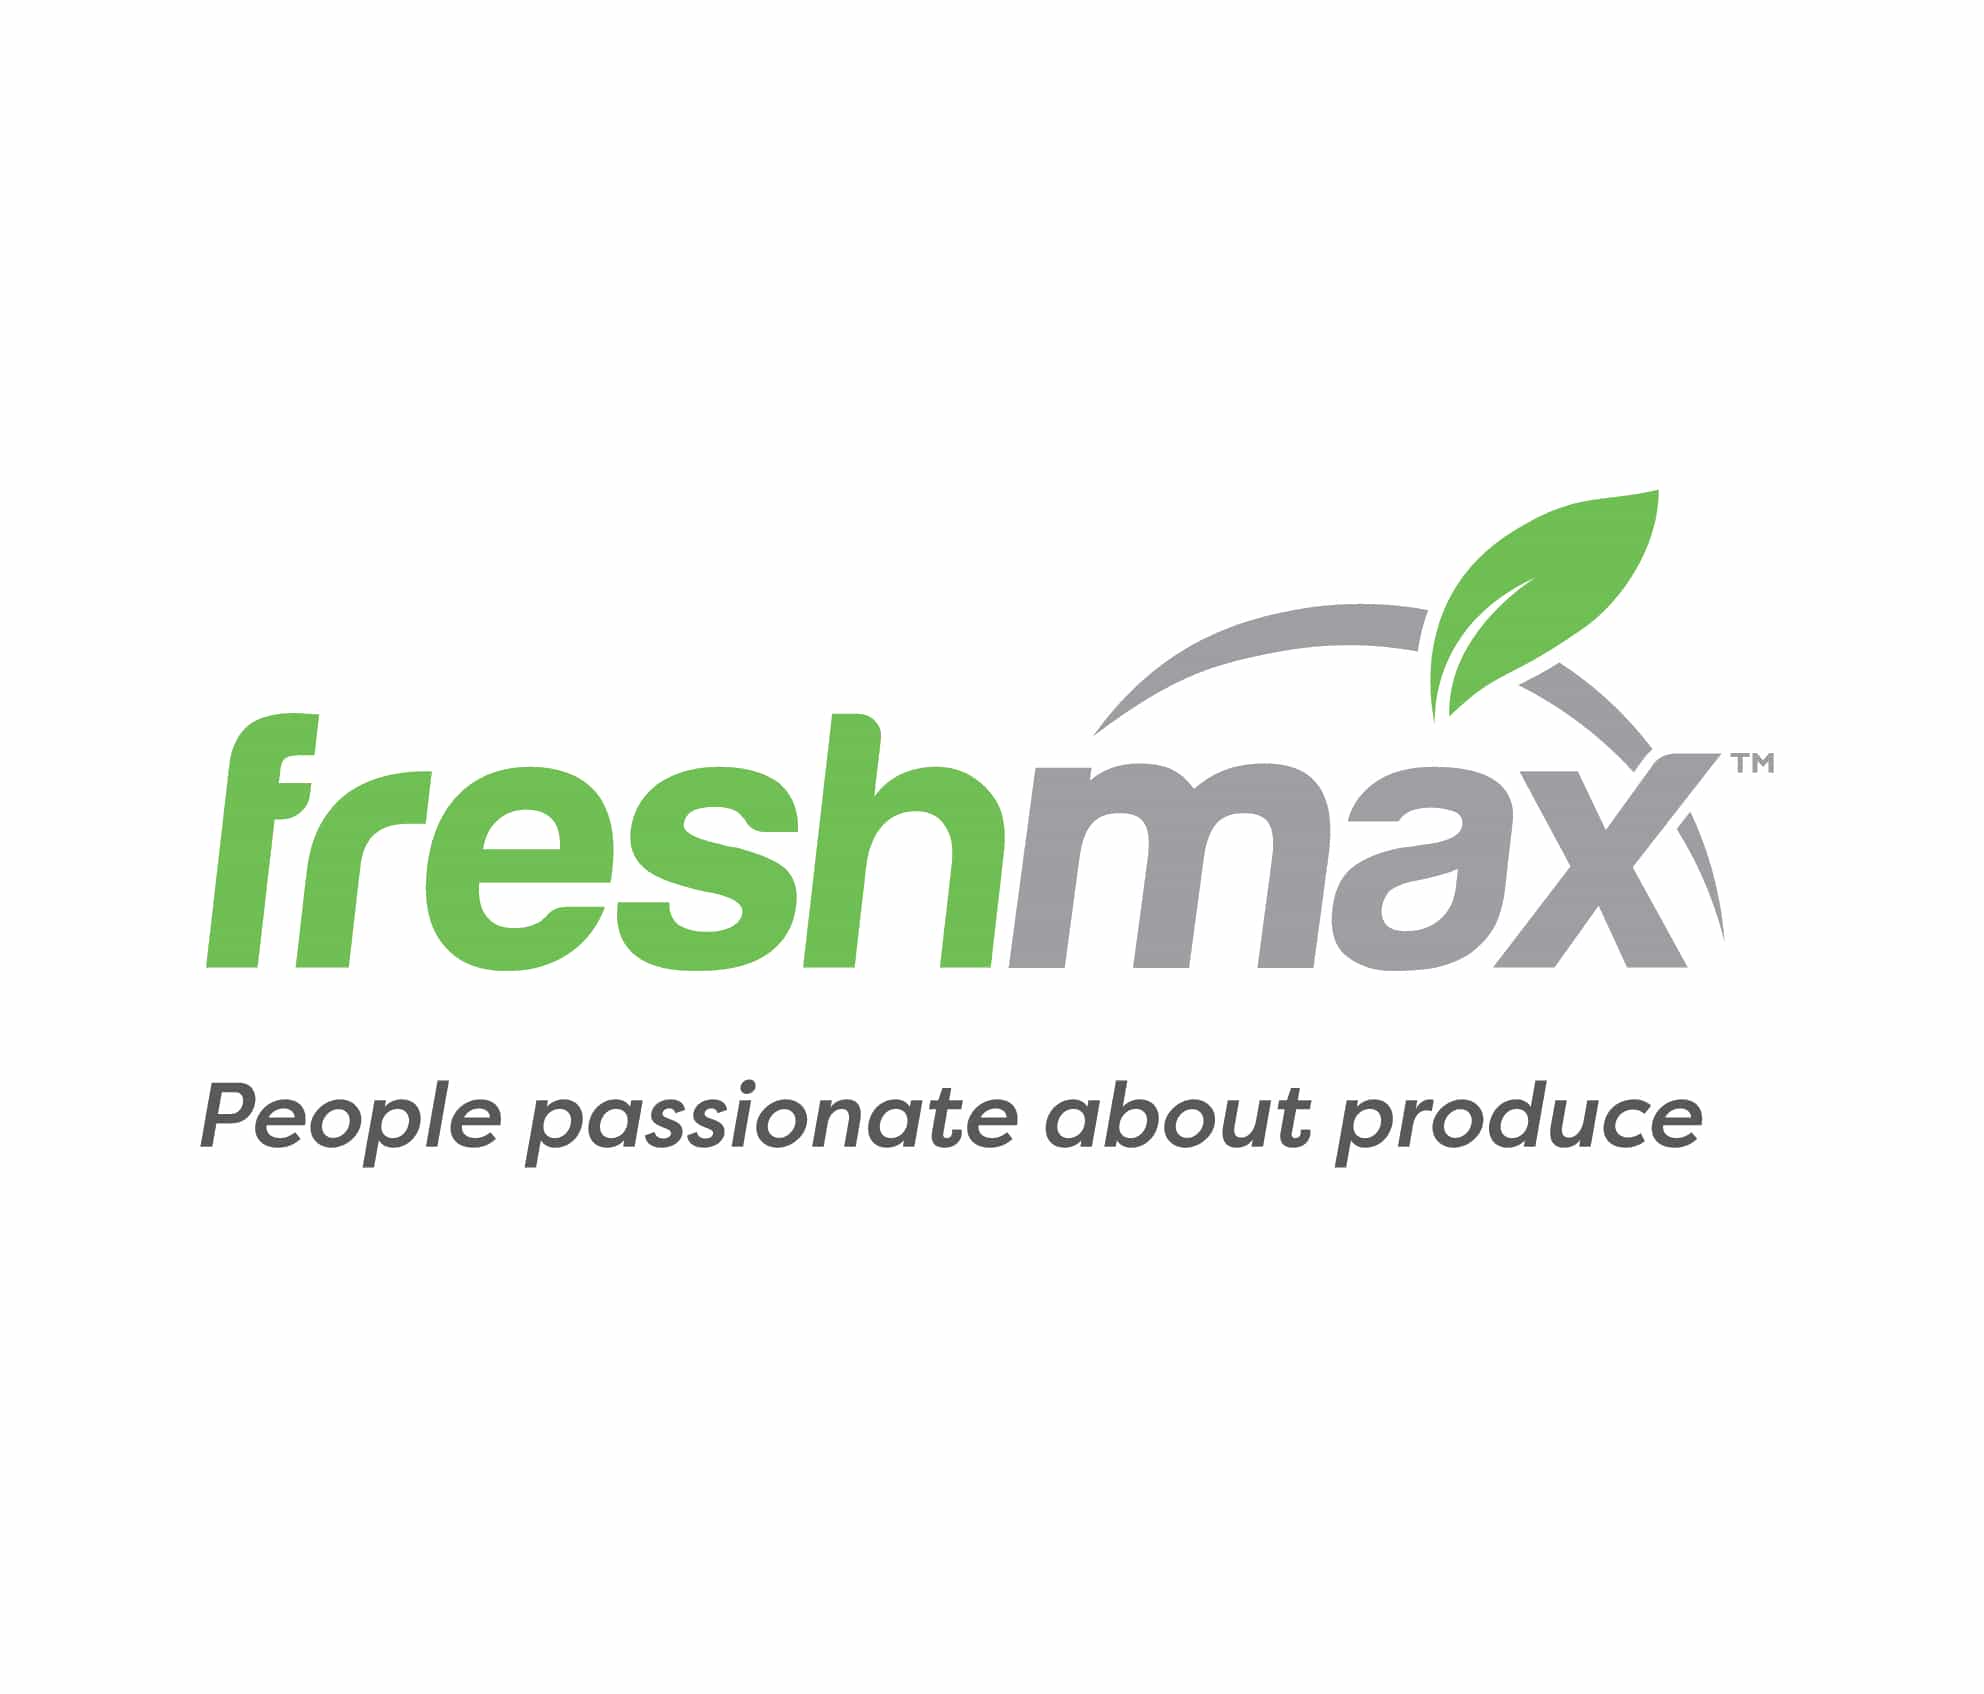 Freshmax-tagline-with-logo